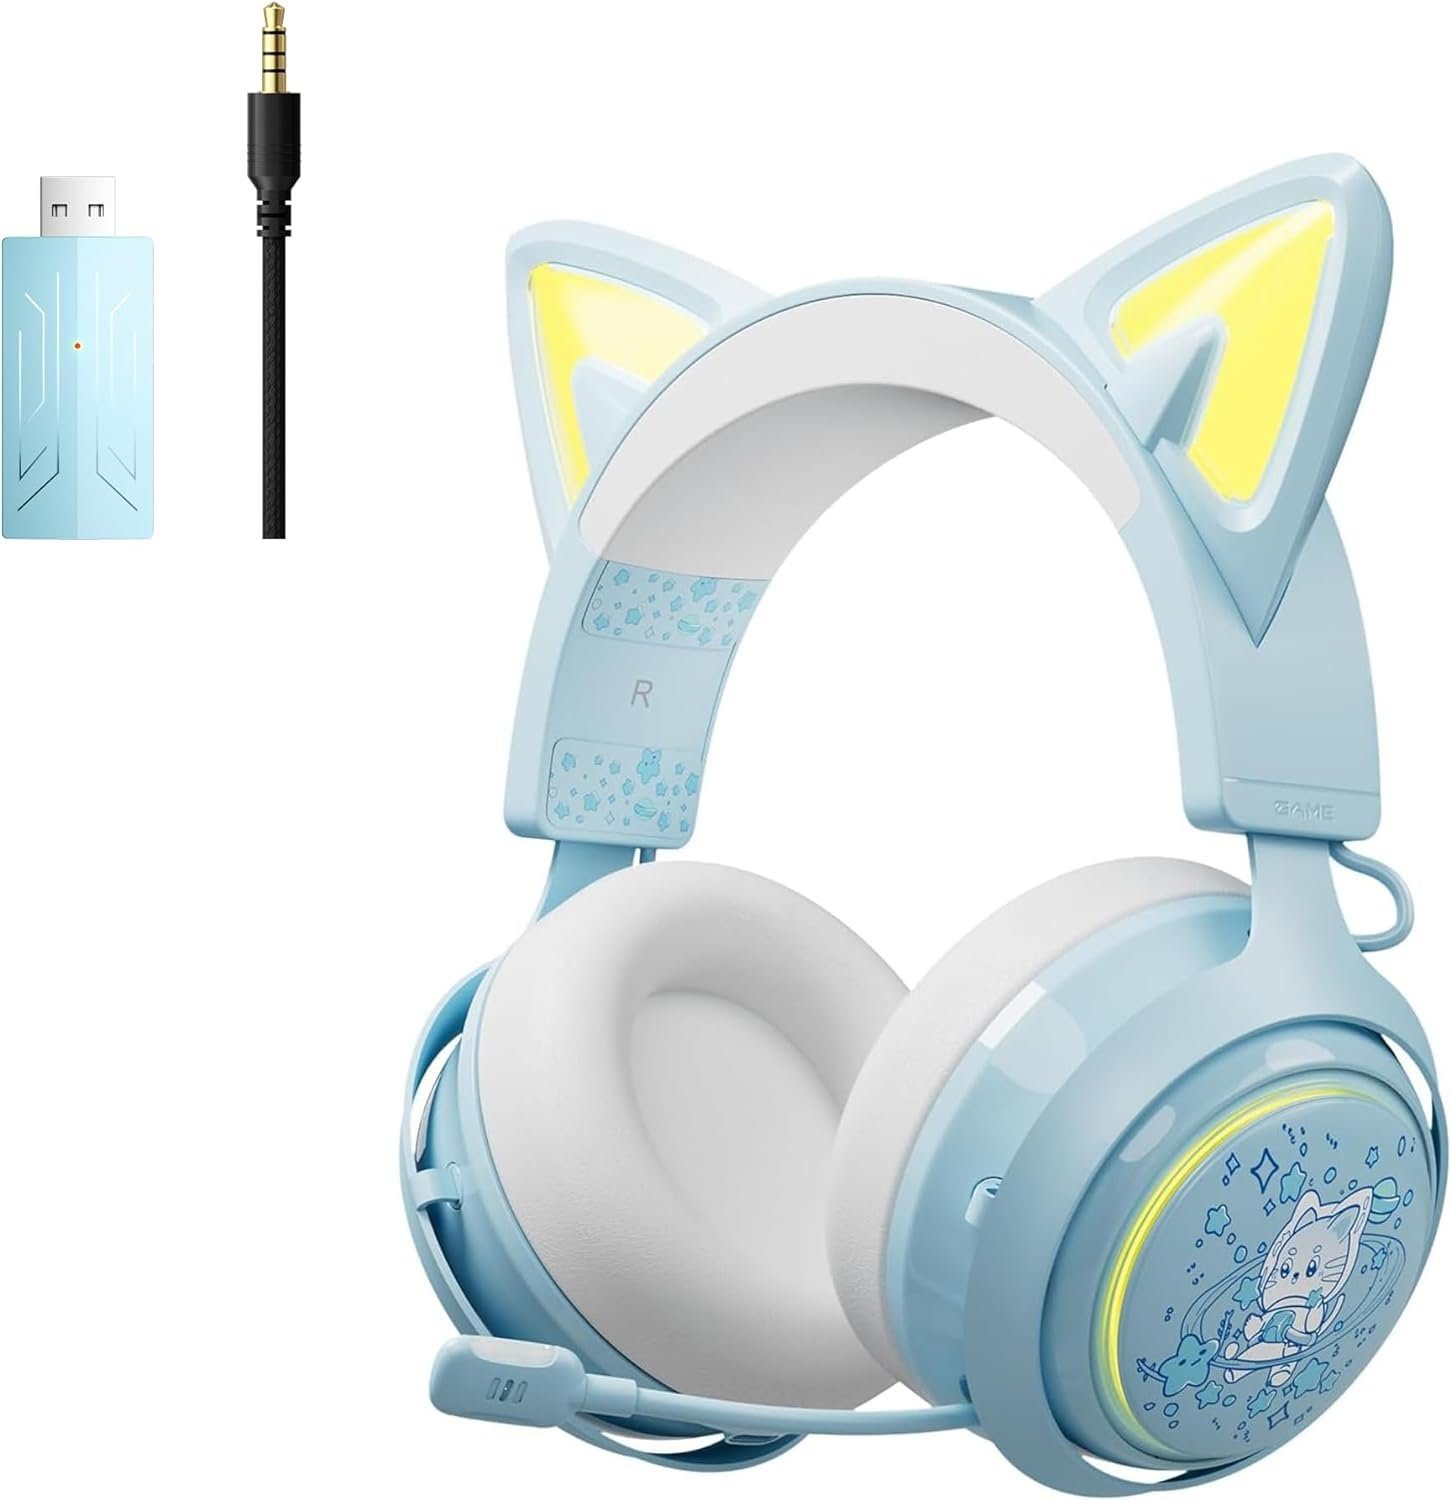 "Drahtlose ein , erstklassige für PC) (Beeindruckende PS4, und PS5, Gaming-Headset Kommunikation. GS510Pro mit Cat-Ear-Kopfhörer RGB-Beleuchtung einziehbares 2.4G/Bluetooth Somikon Rauschunterdrückungsmikrofon für